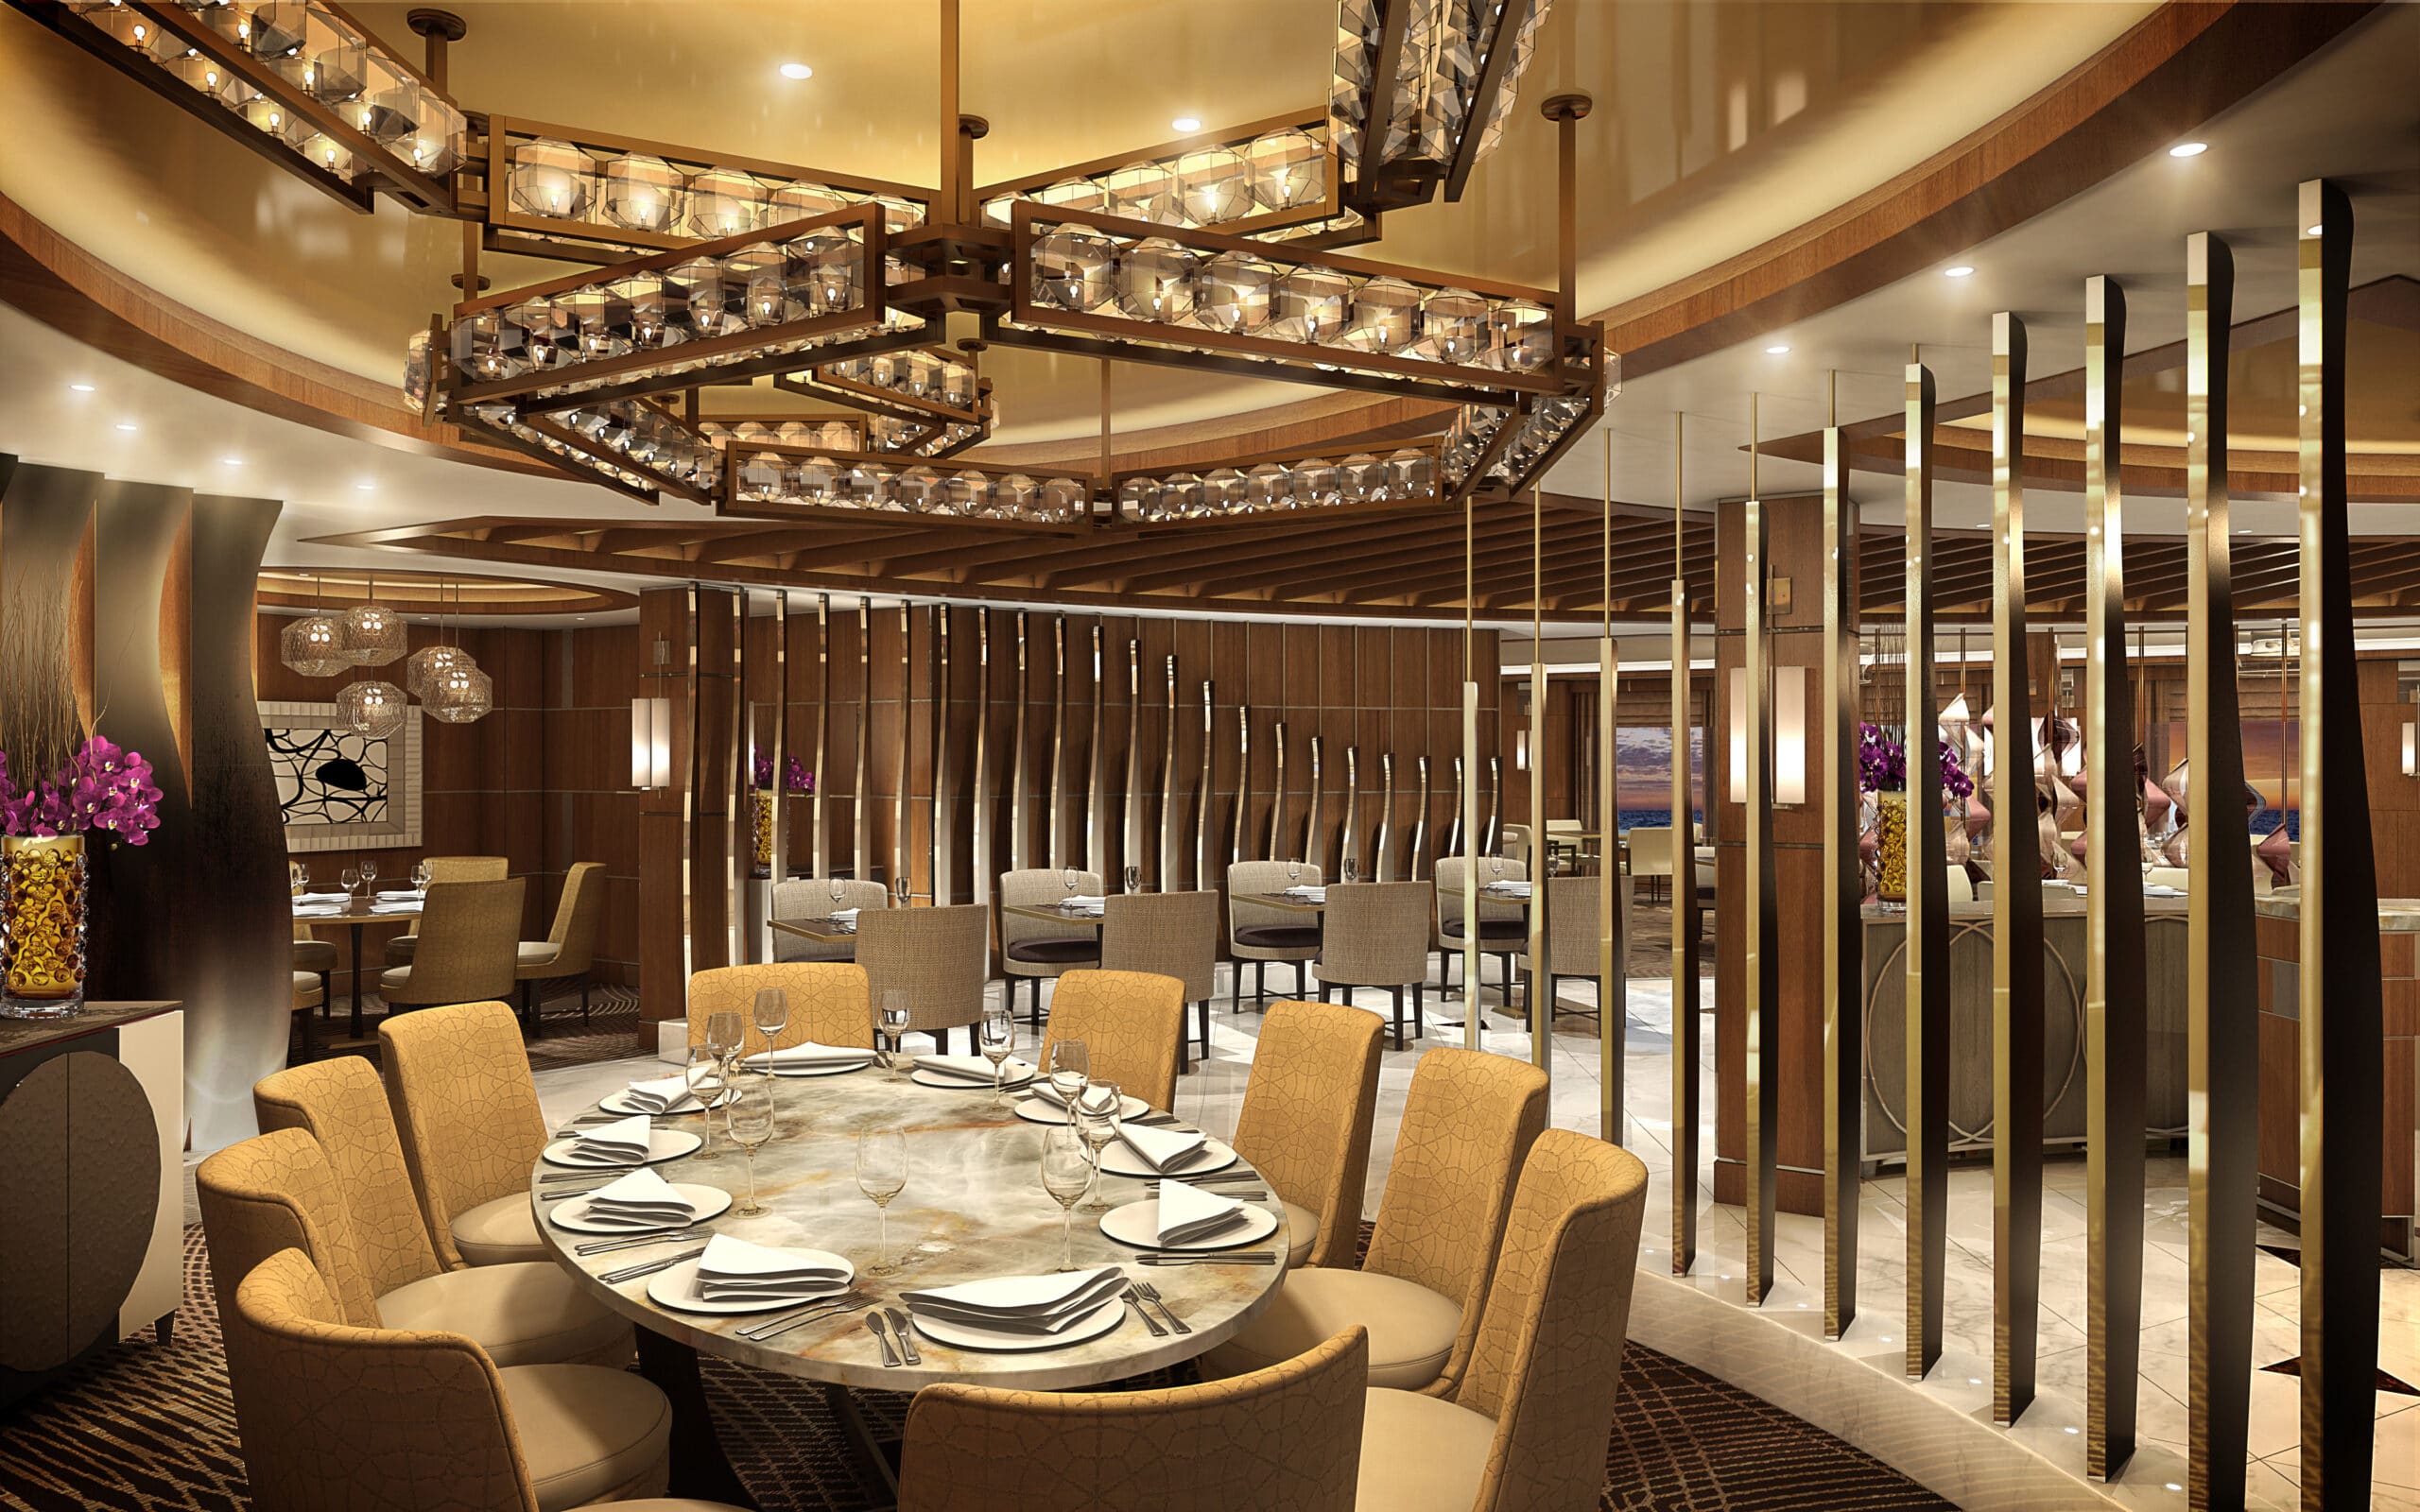 Cruiseschip-Sky Princess-Princess Cruises-Restaurant Sabatinis